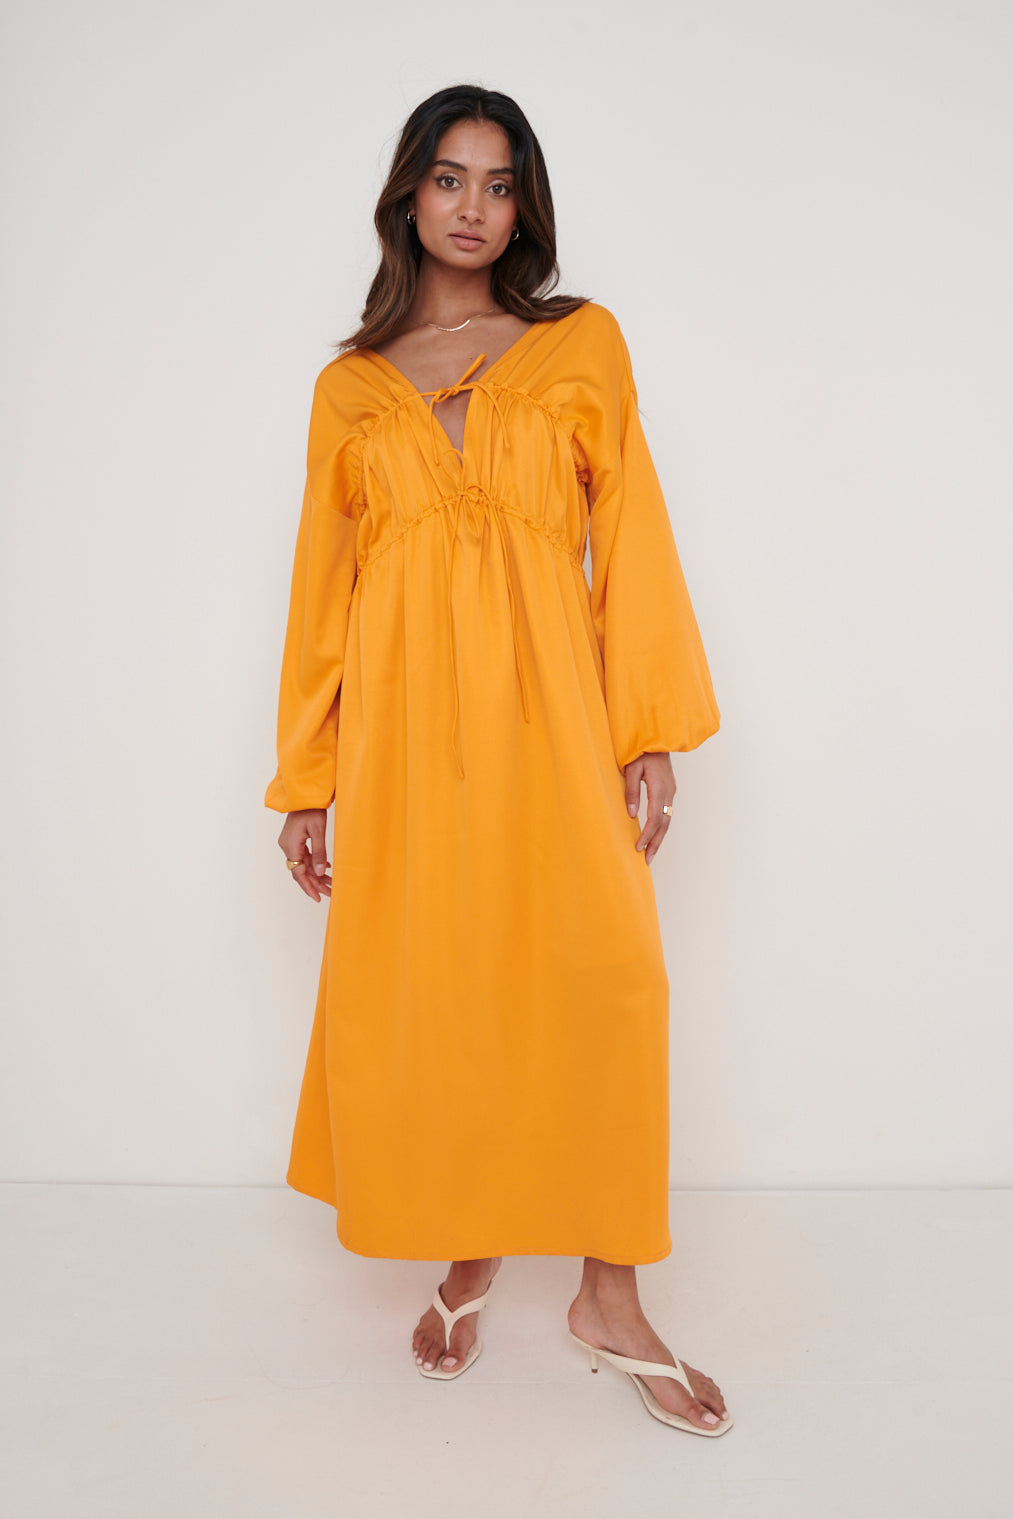 Ottilie Tie Midaxi Dress - Tangerine, 8